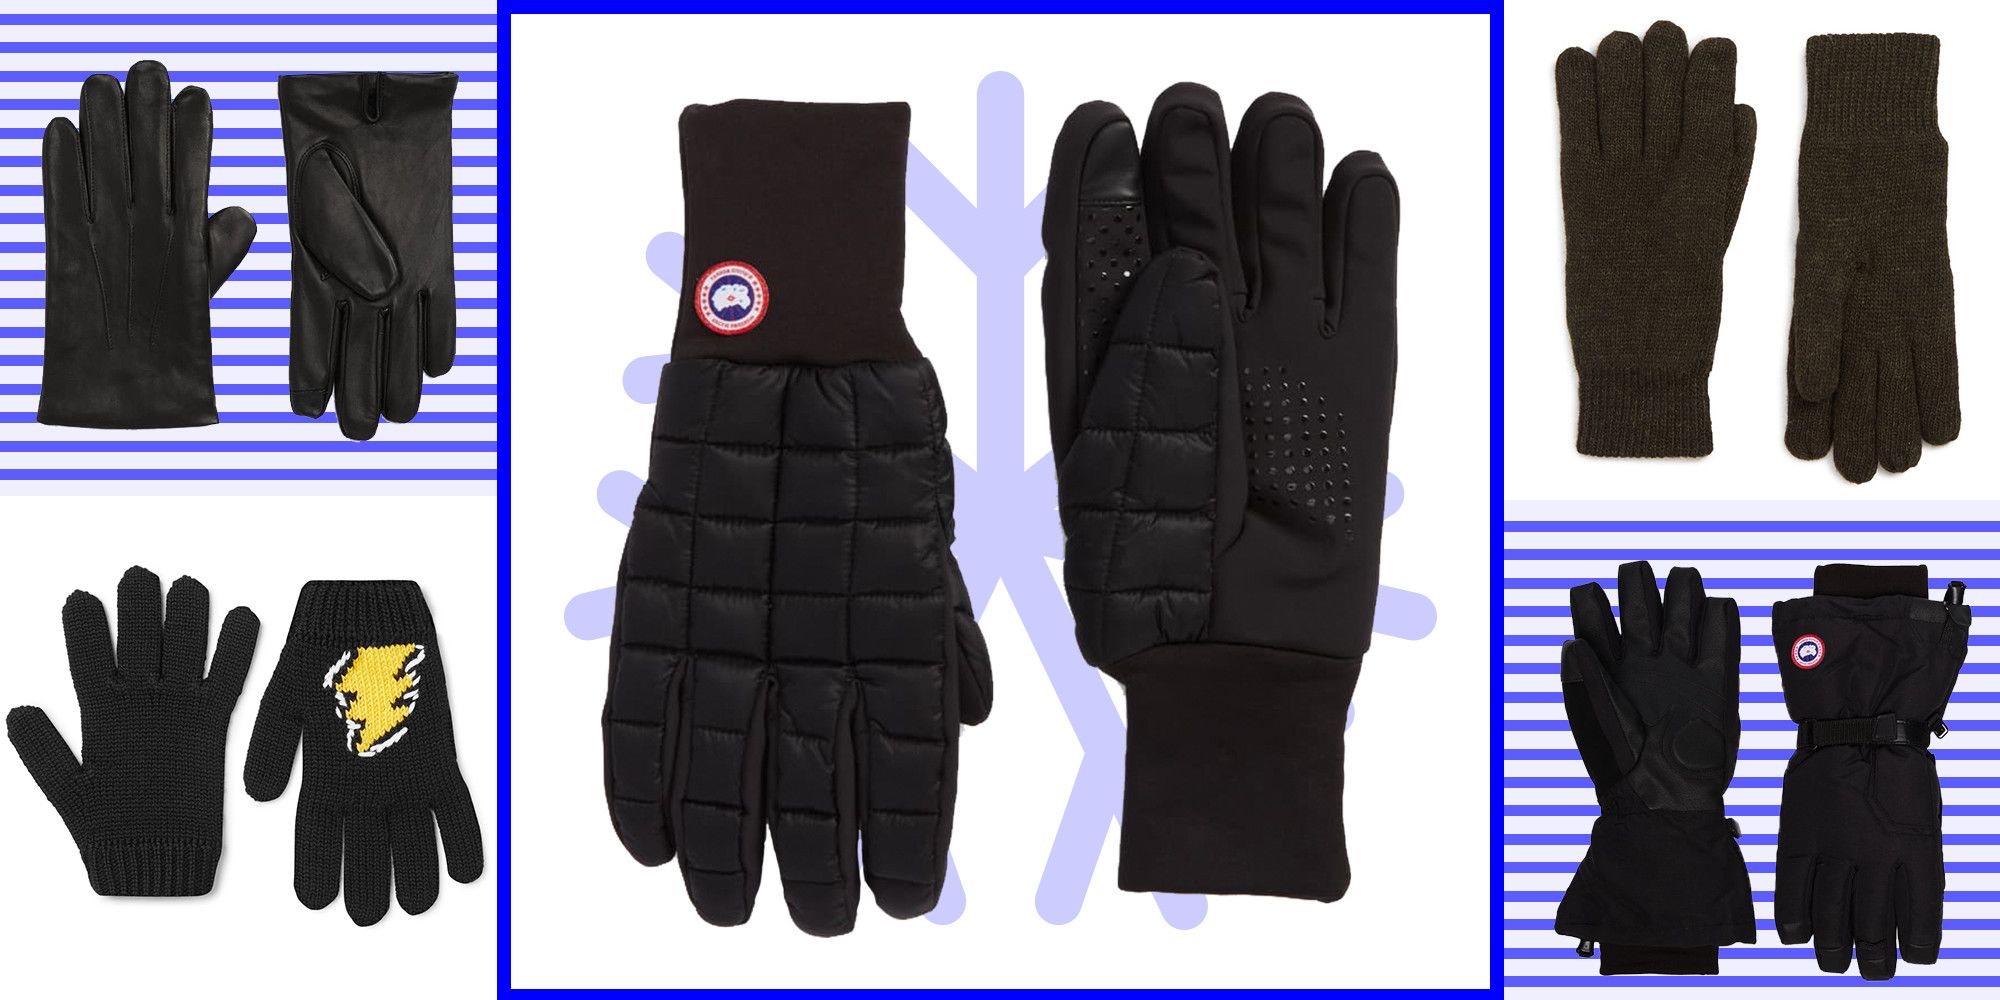 19 Best Winter Gloves for Men - Best 